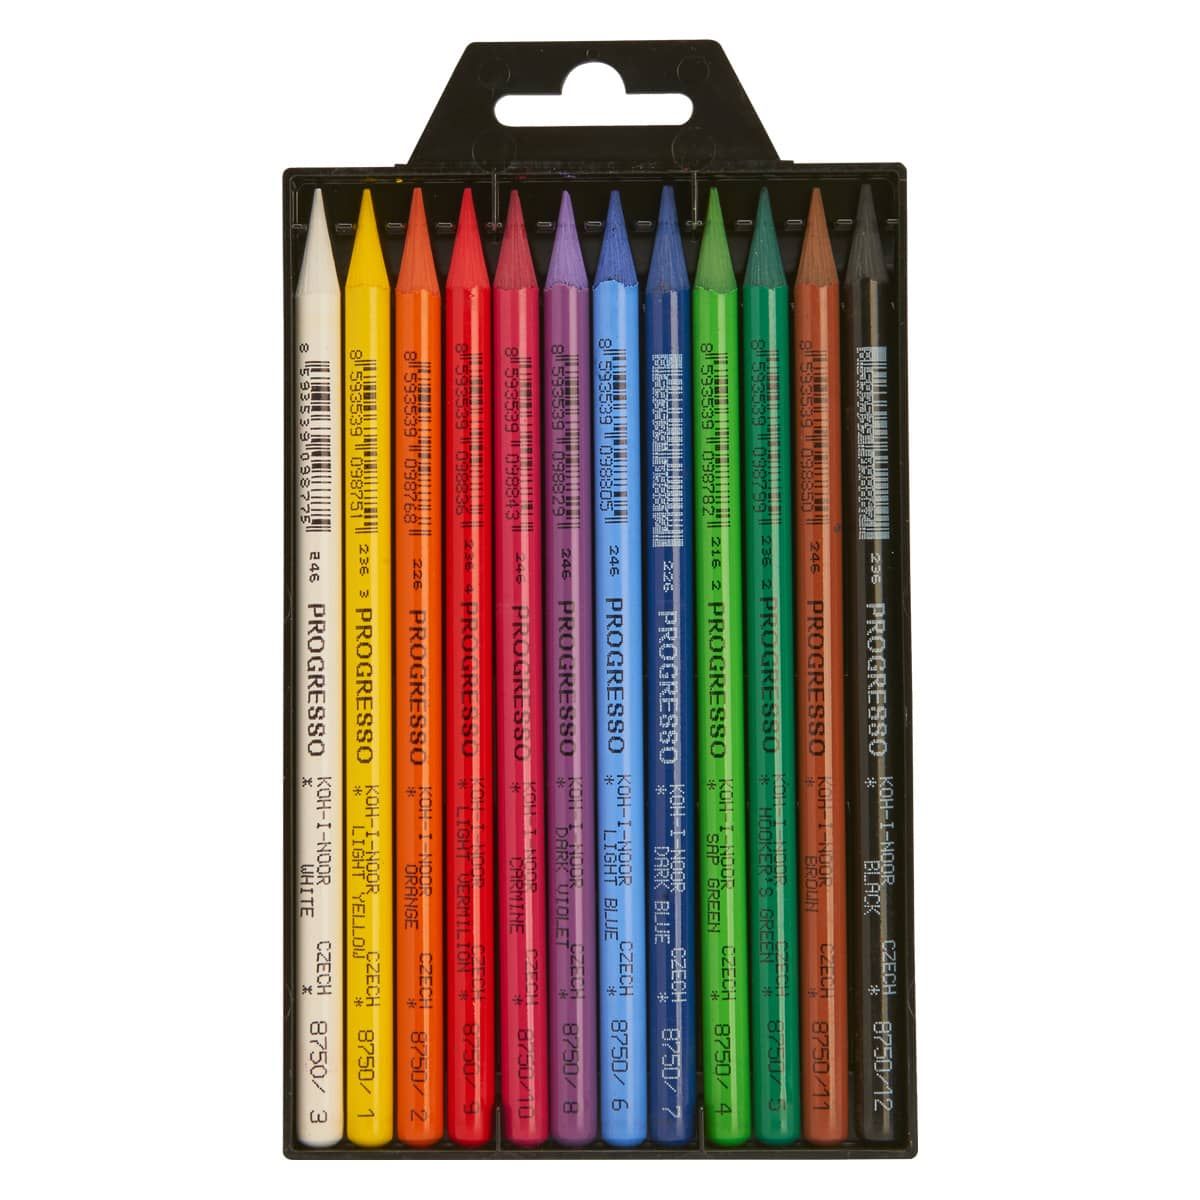 Koh-I-Noor Progresso set of 6 Woodless Coloured Pencil 8755 